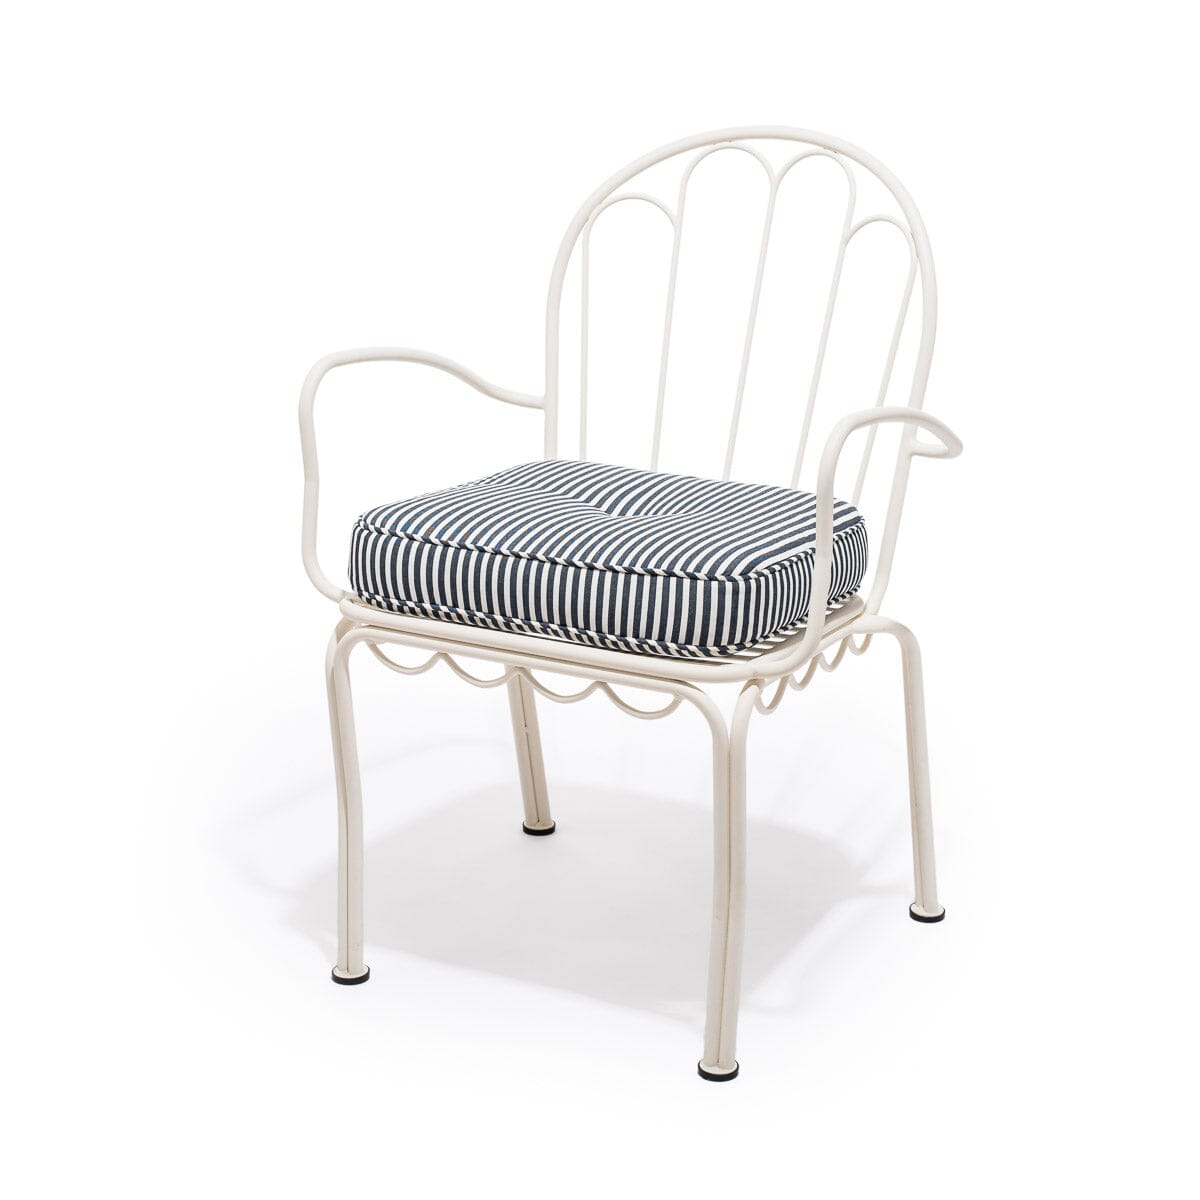 The Al Fresco Chair Cushion - Lauren's Navy Stripe Al Fresco Chair Cushion Business & Pleasure Co 